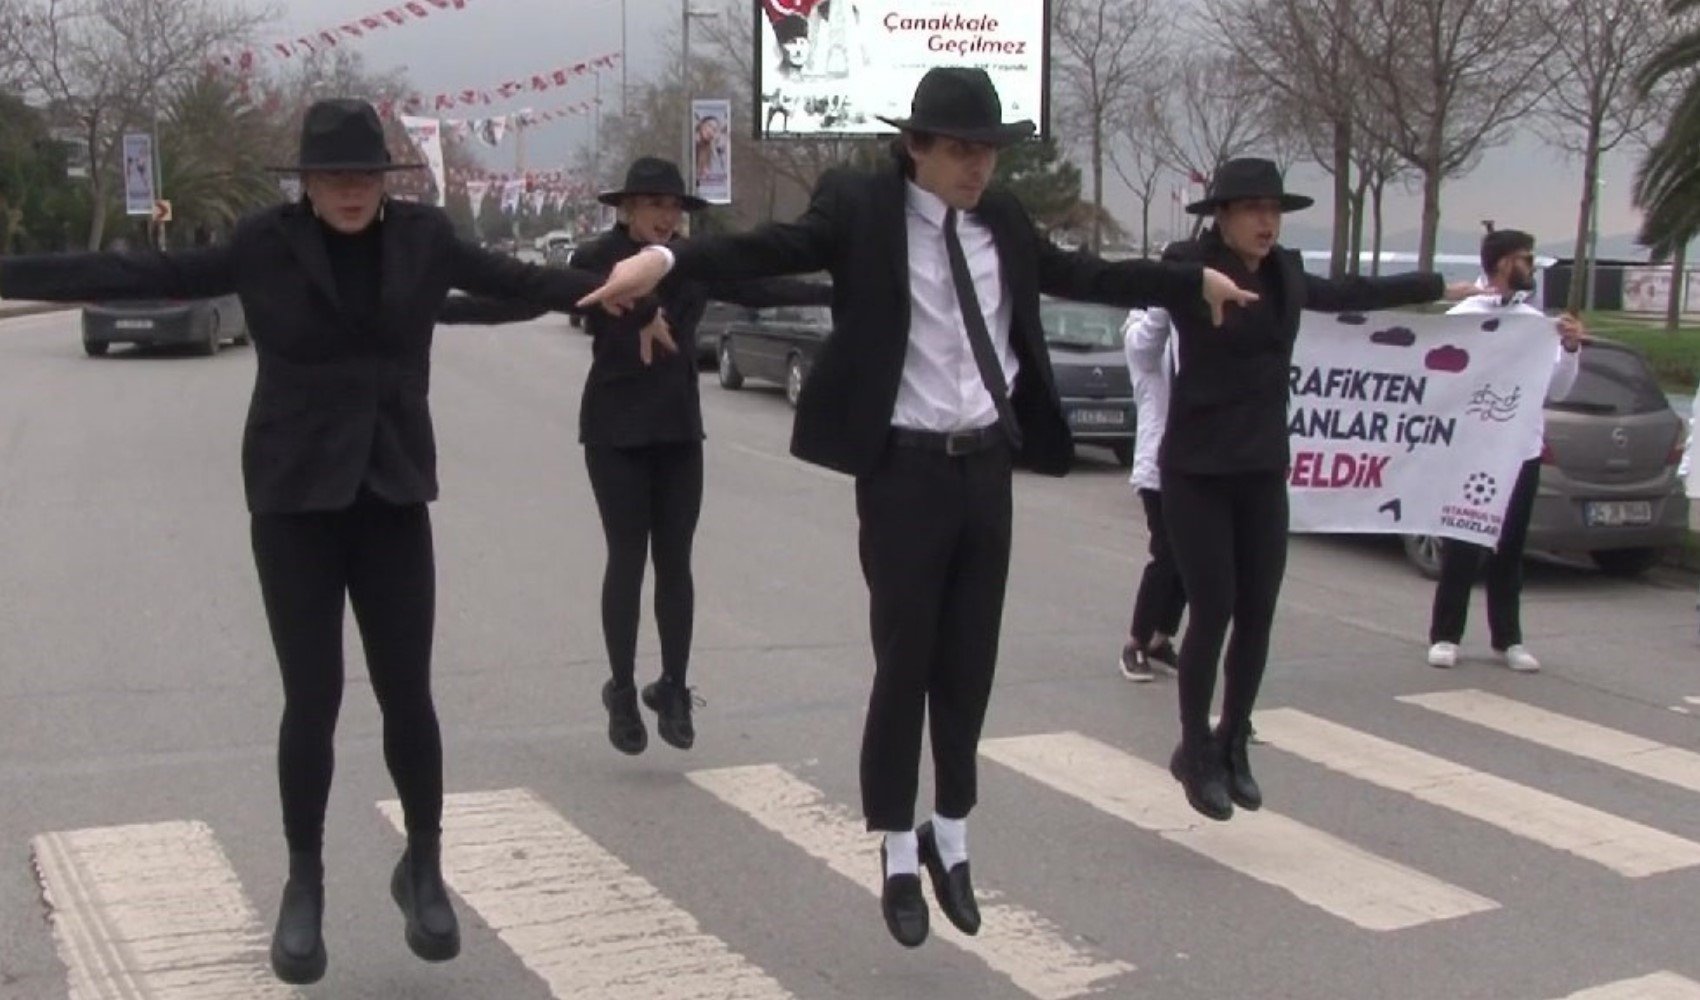 Kadıköy trafiğinde 'moonwalk' dansı yaptılar